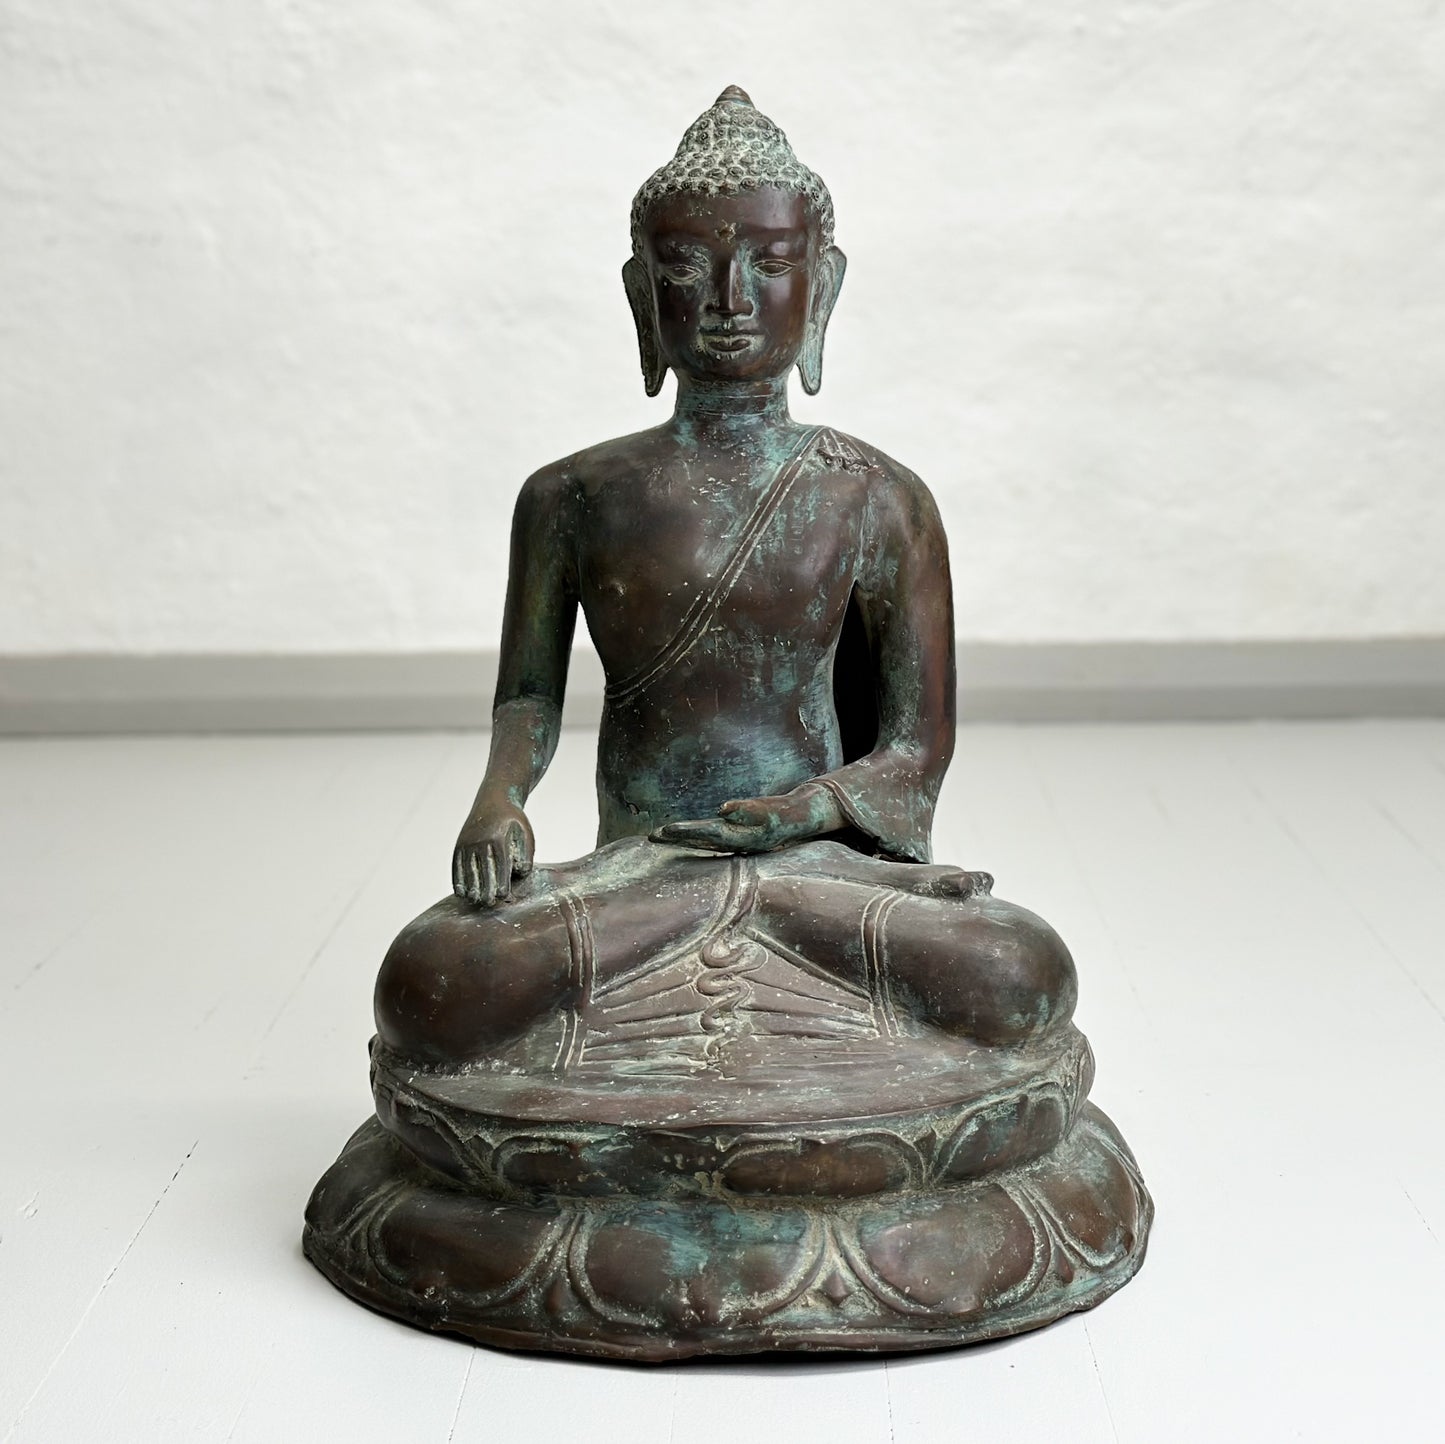 Seated Bronze Buddha Statue